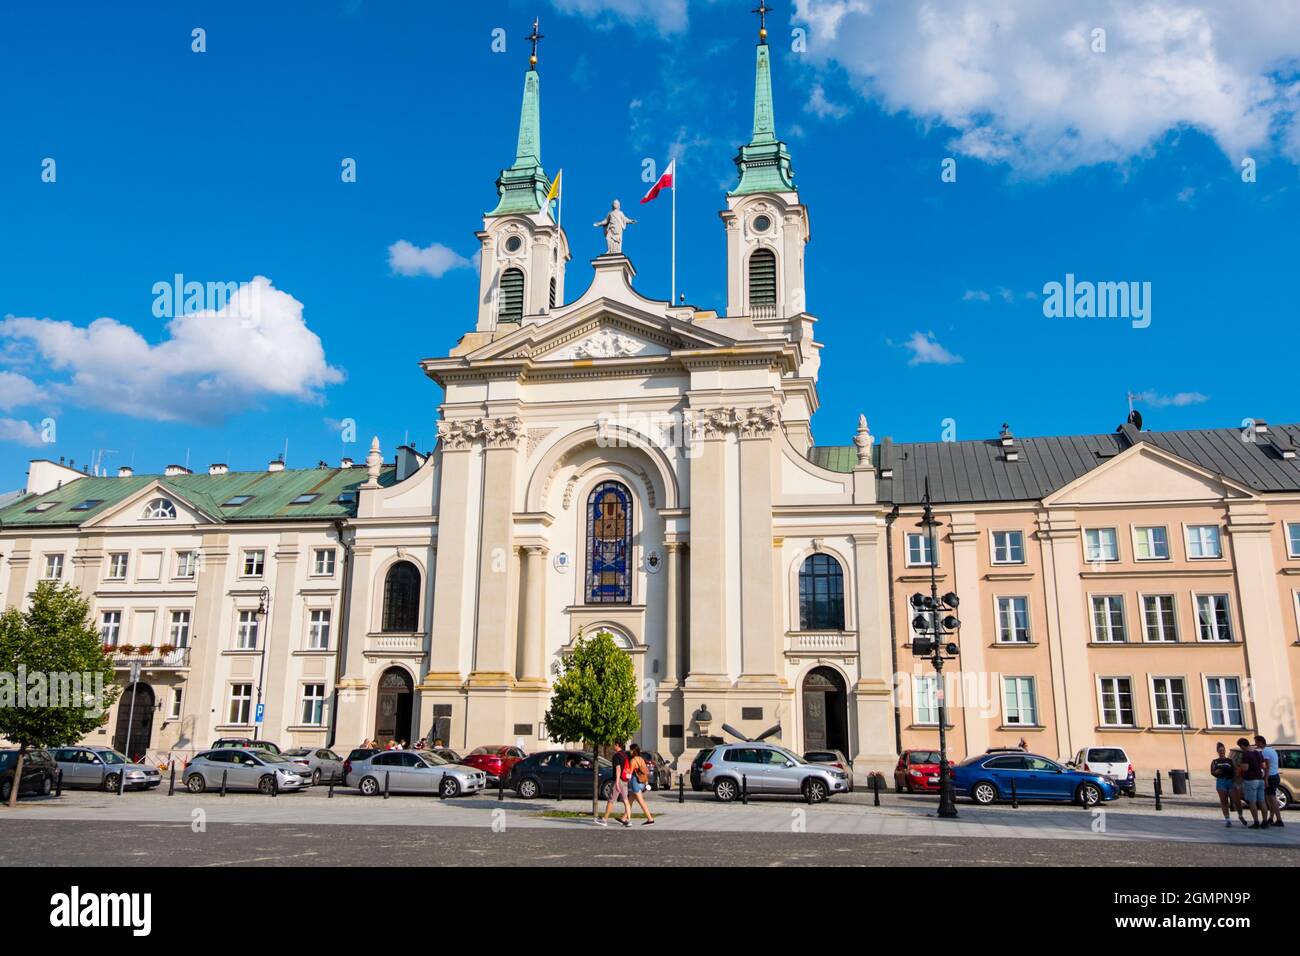 Katedra Polowa Wojska Polskiego, Field Cathedral of the Polish Army, Dluga, Warsaw, Poland Stock Photo